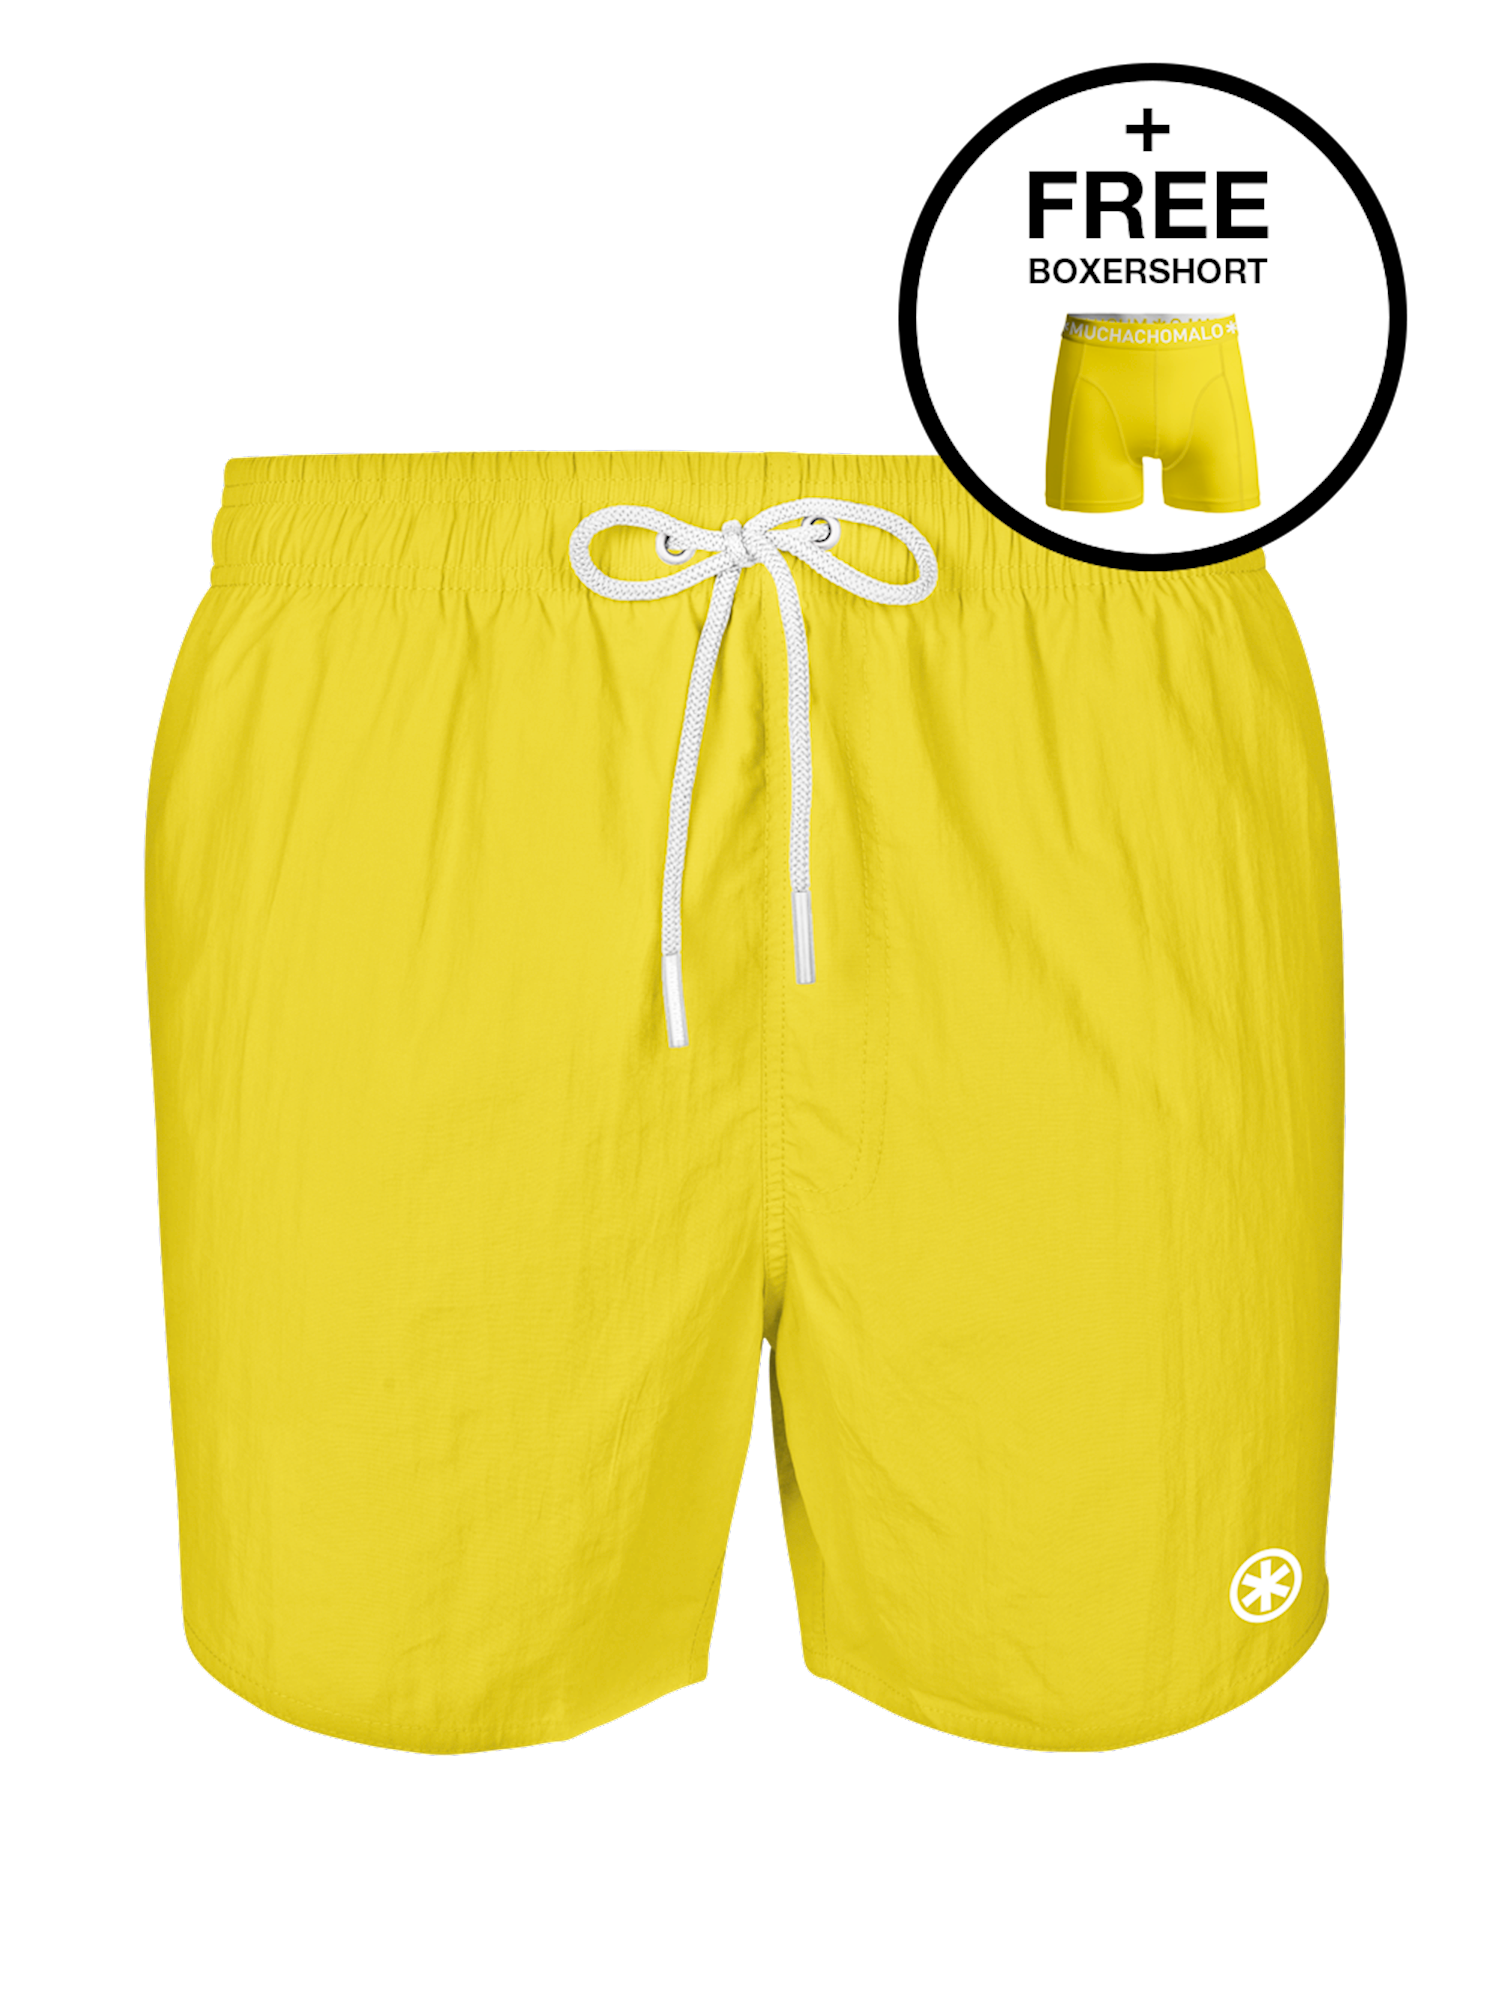 Muchachomalo Swimshort Yellow size L